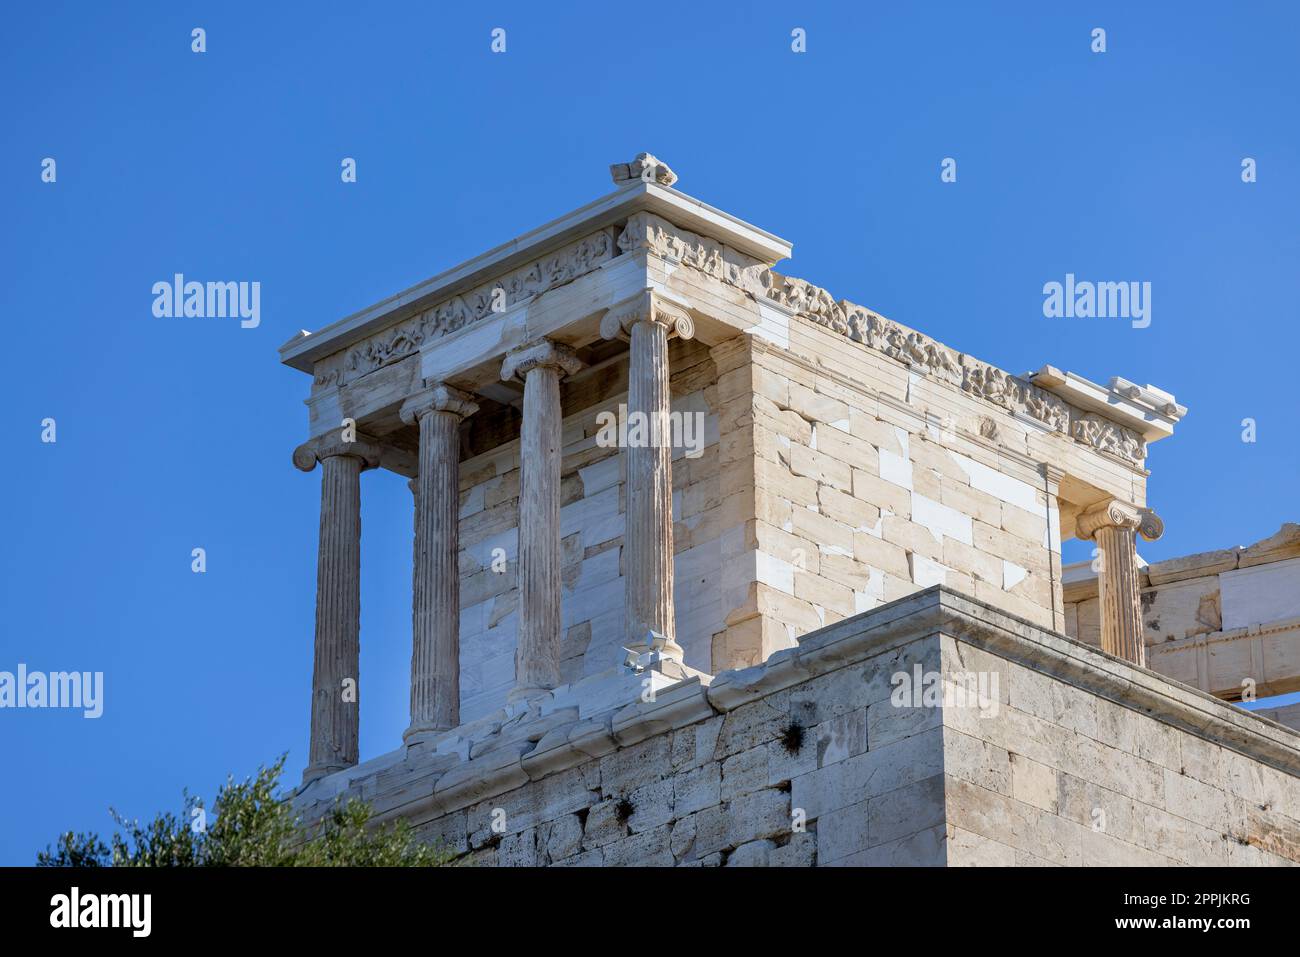 Tempio di Atena Nike a Propilaia, monumentale porta cerimoniale per l'Acropoli di Atene, Grecia. Si tratta di un'antica cittadella situata su un pendio roccioso sopra la città Foto Stock